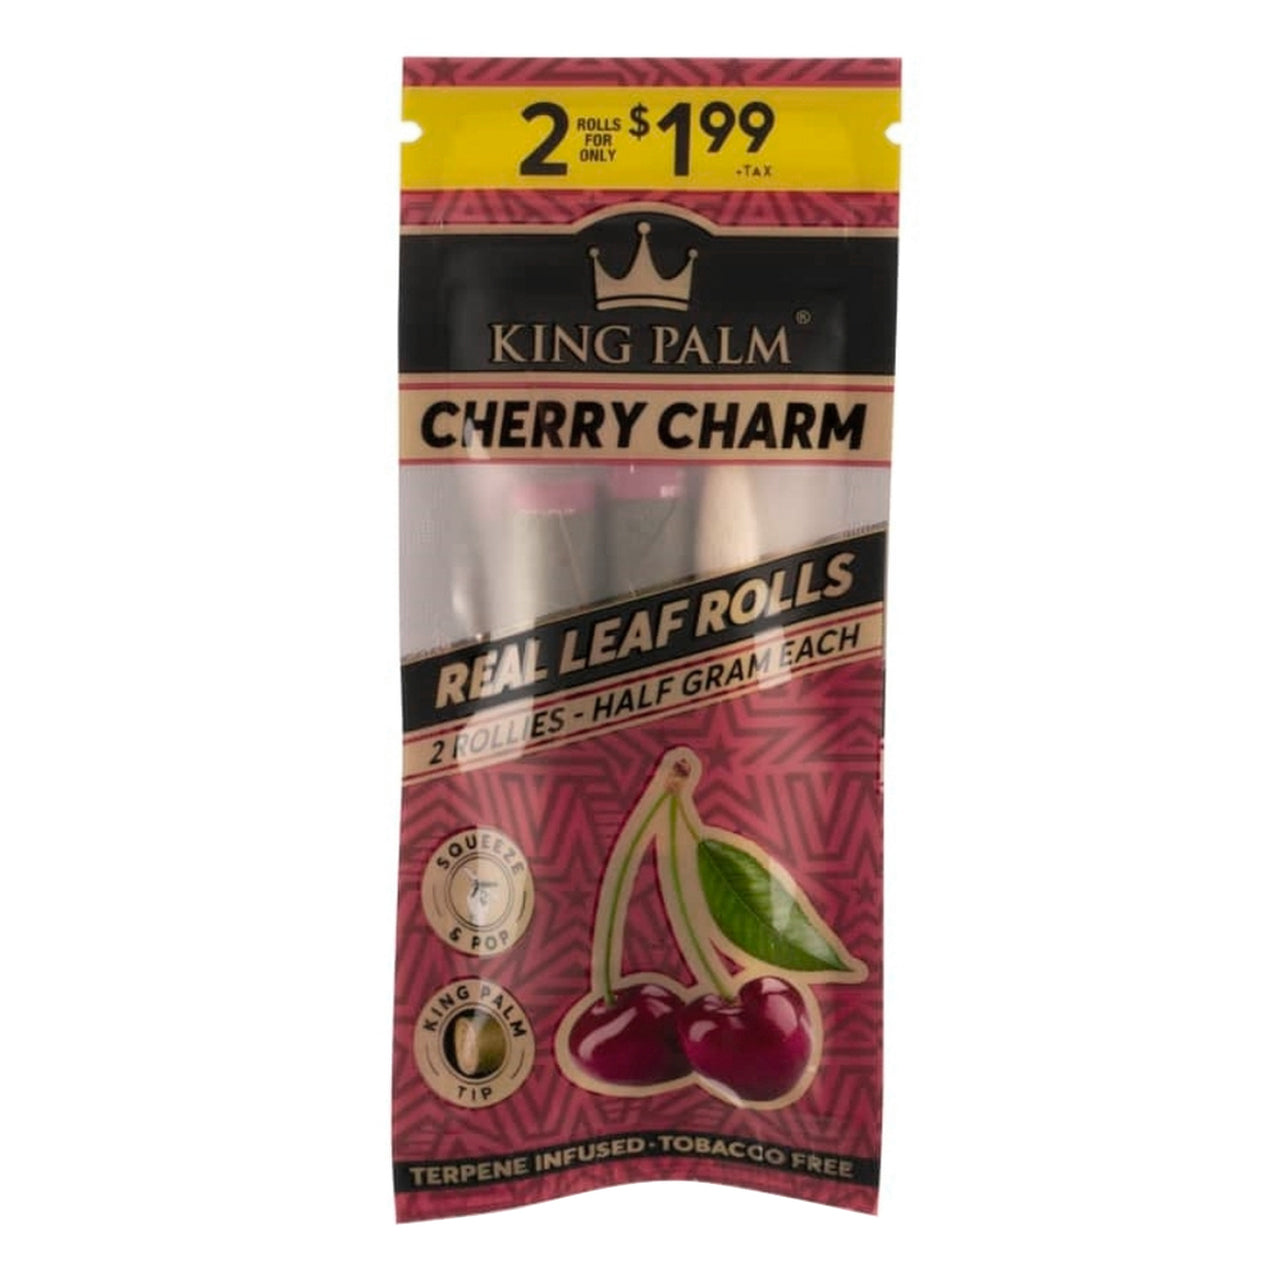 King Palm Cherry Charm 2 Pack